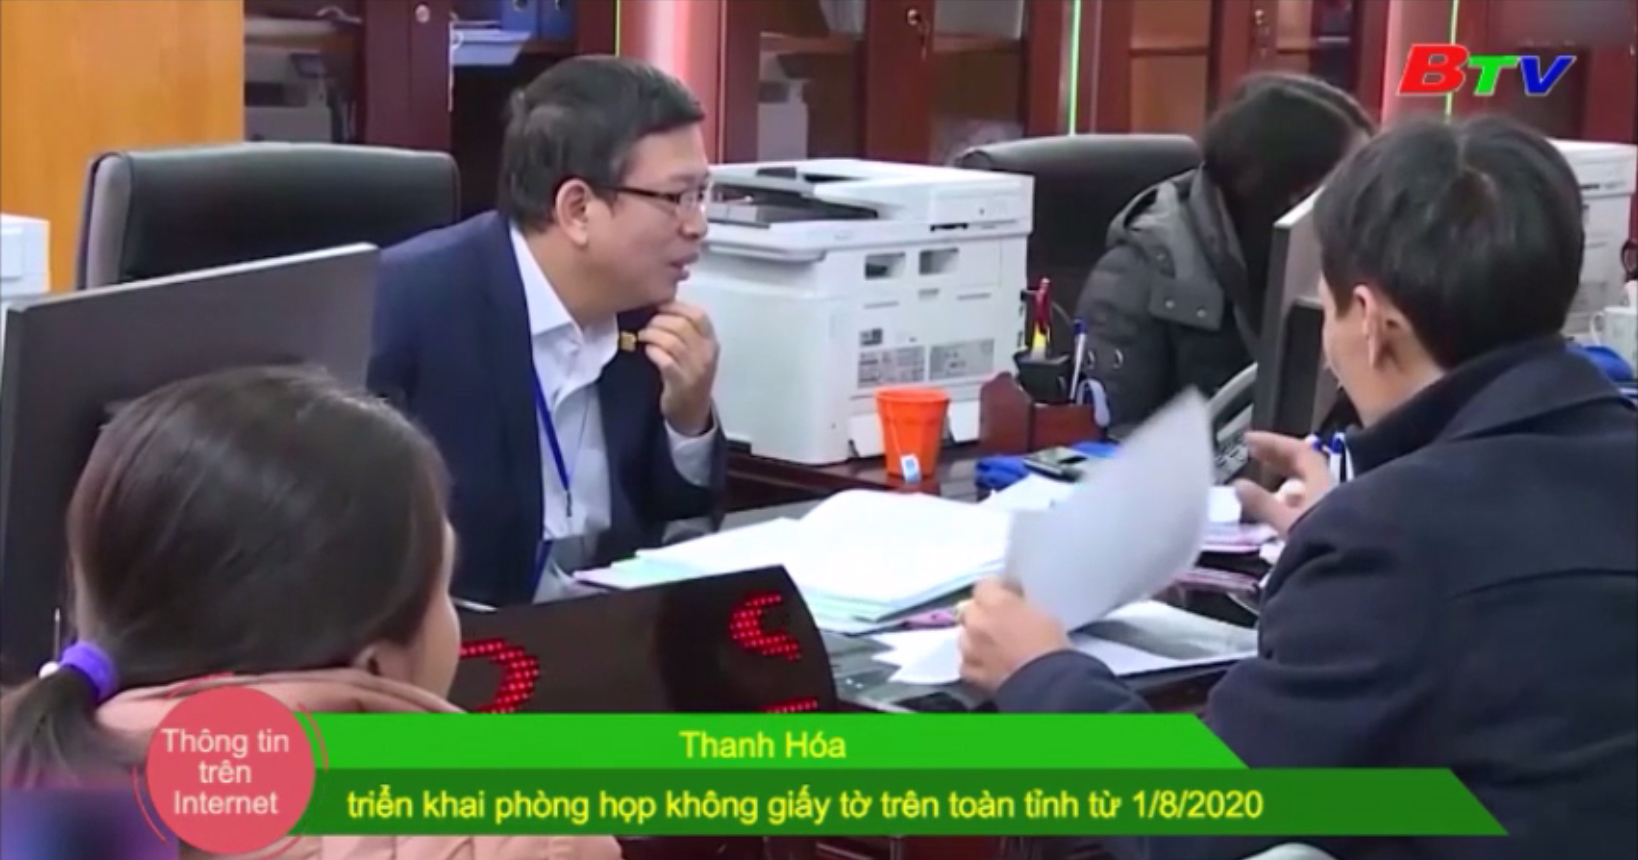 Thanh Hóa triển khai phòng họp không giấy tờ trên toàn tỉnh từ 1/8/2020